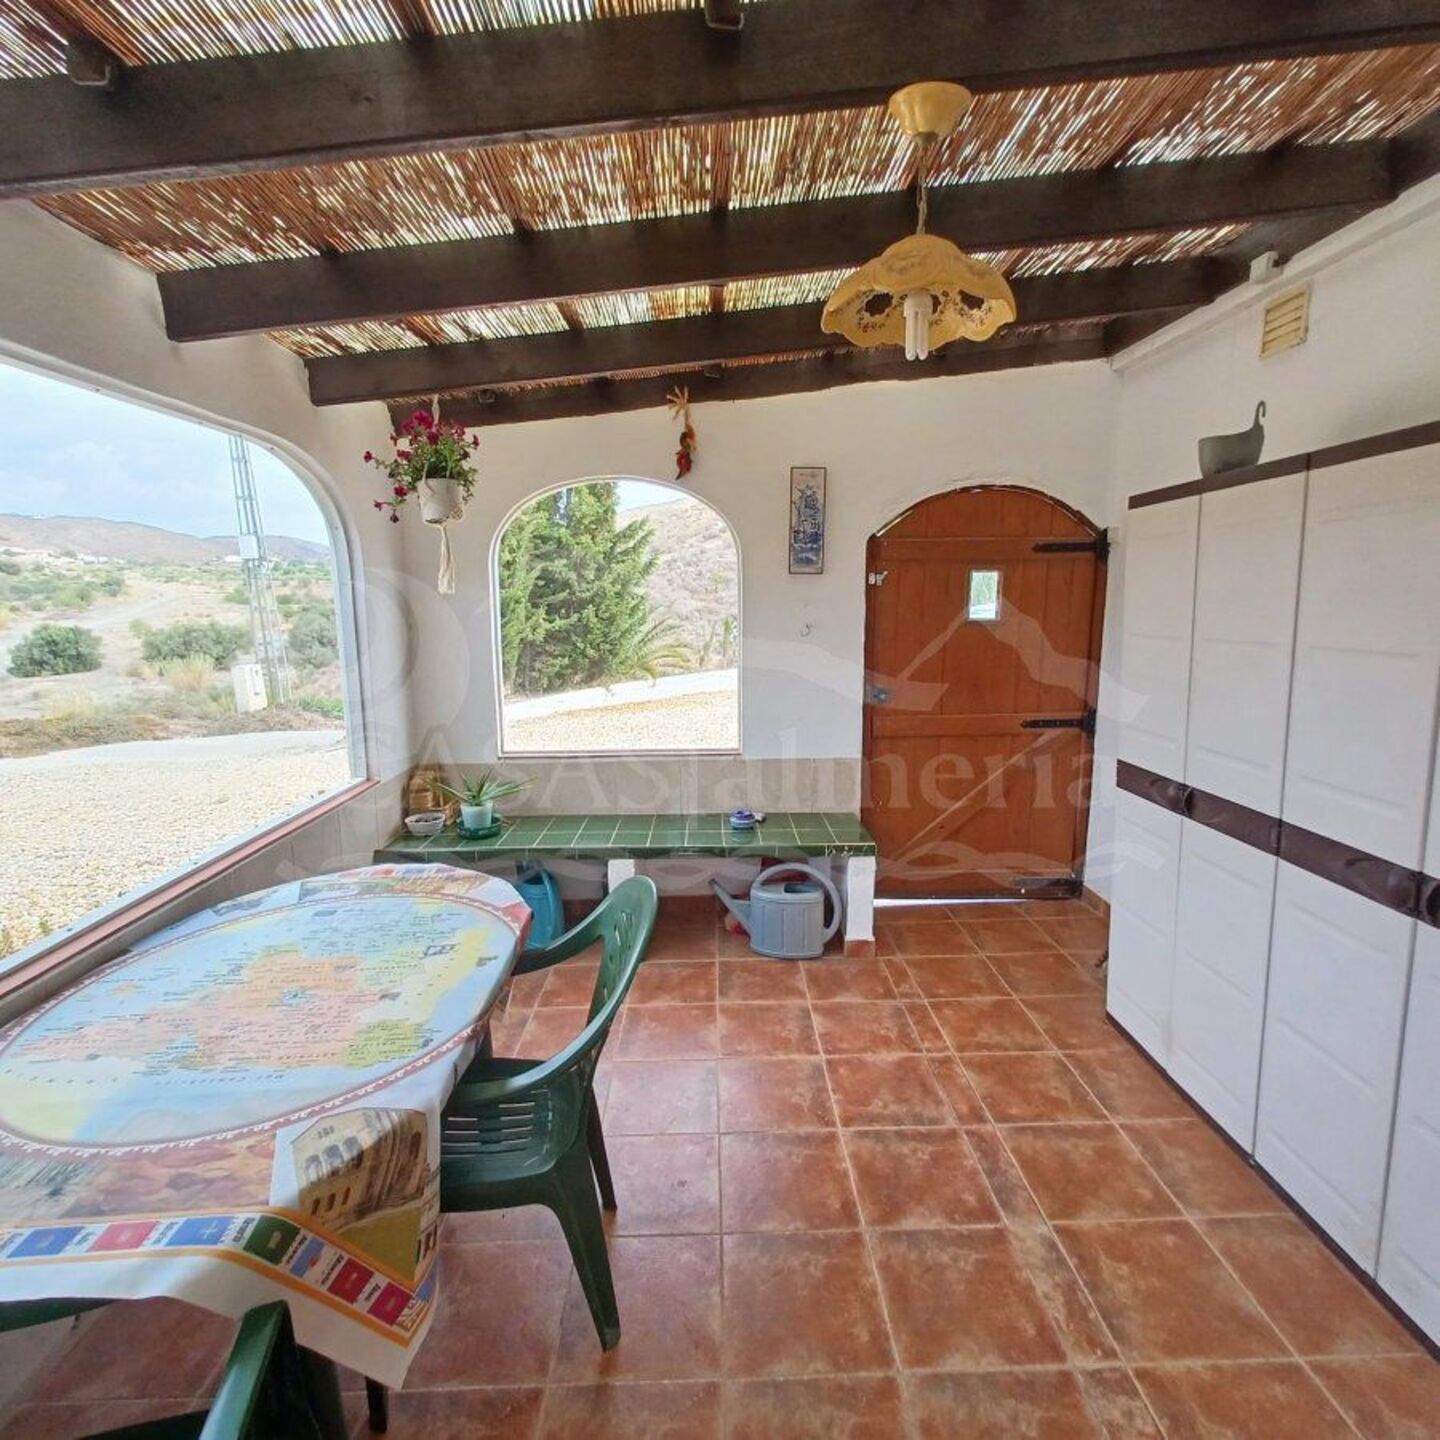 R22230: Villa for Sale in Fuente Amarga, Almería | Casas Almería